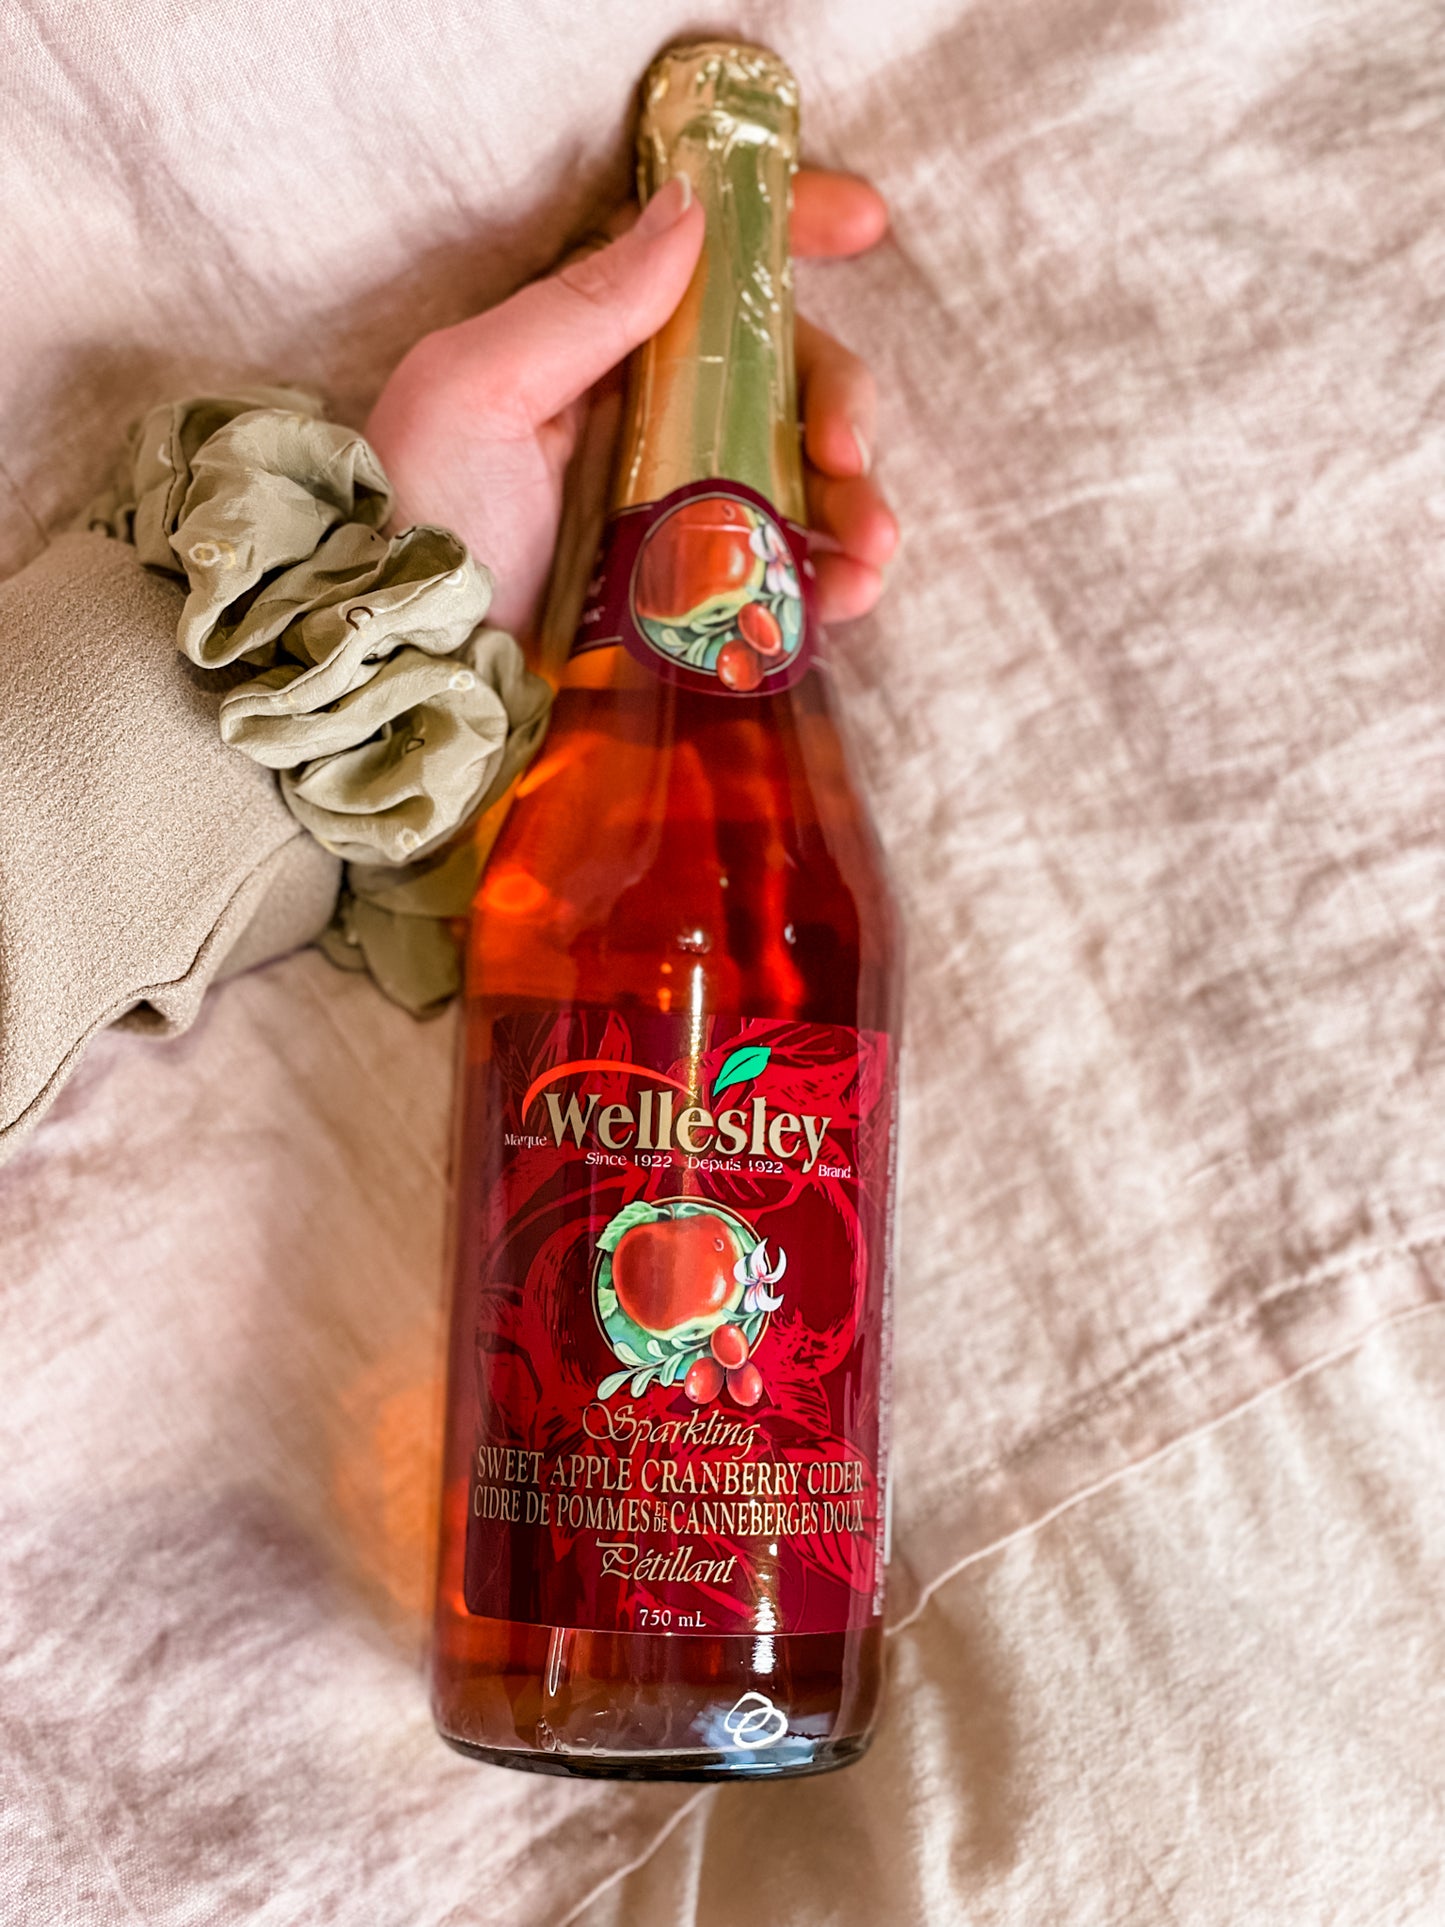 Wellesley Sparkling Sweet Apple Cranberry Cider 750ml - Preservative Free & No Added Sugar